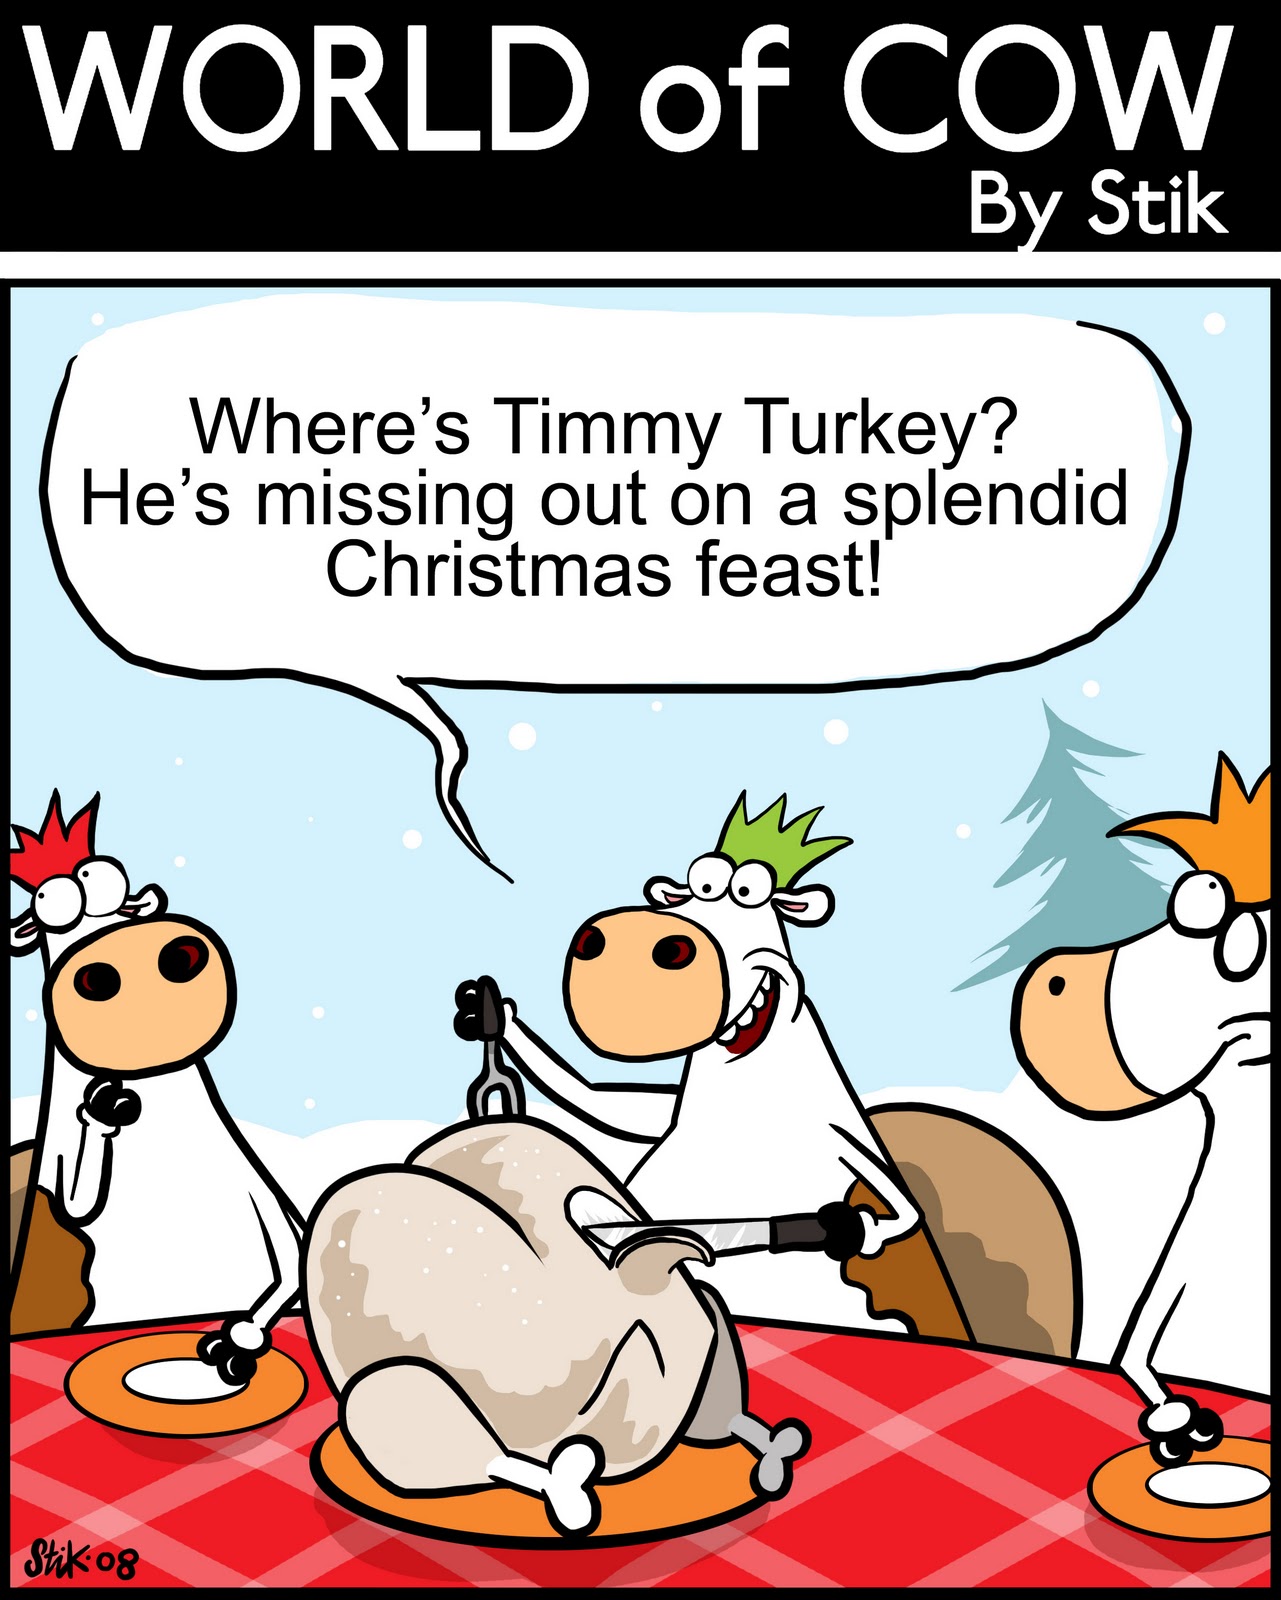 GiantSantasAteMyReindeerGerald: Christmas Cartoon Fun